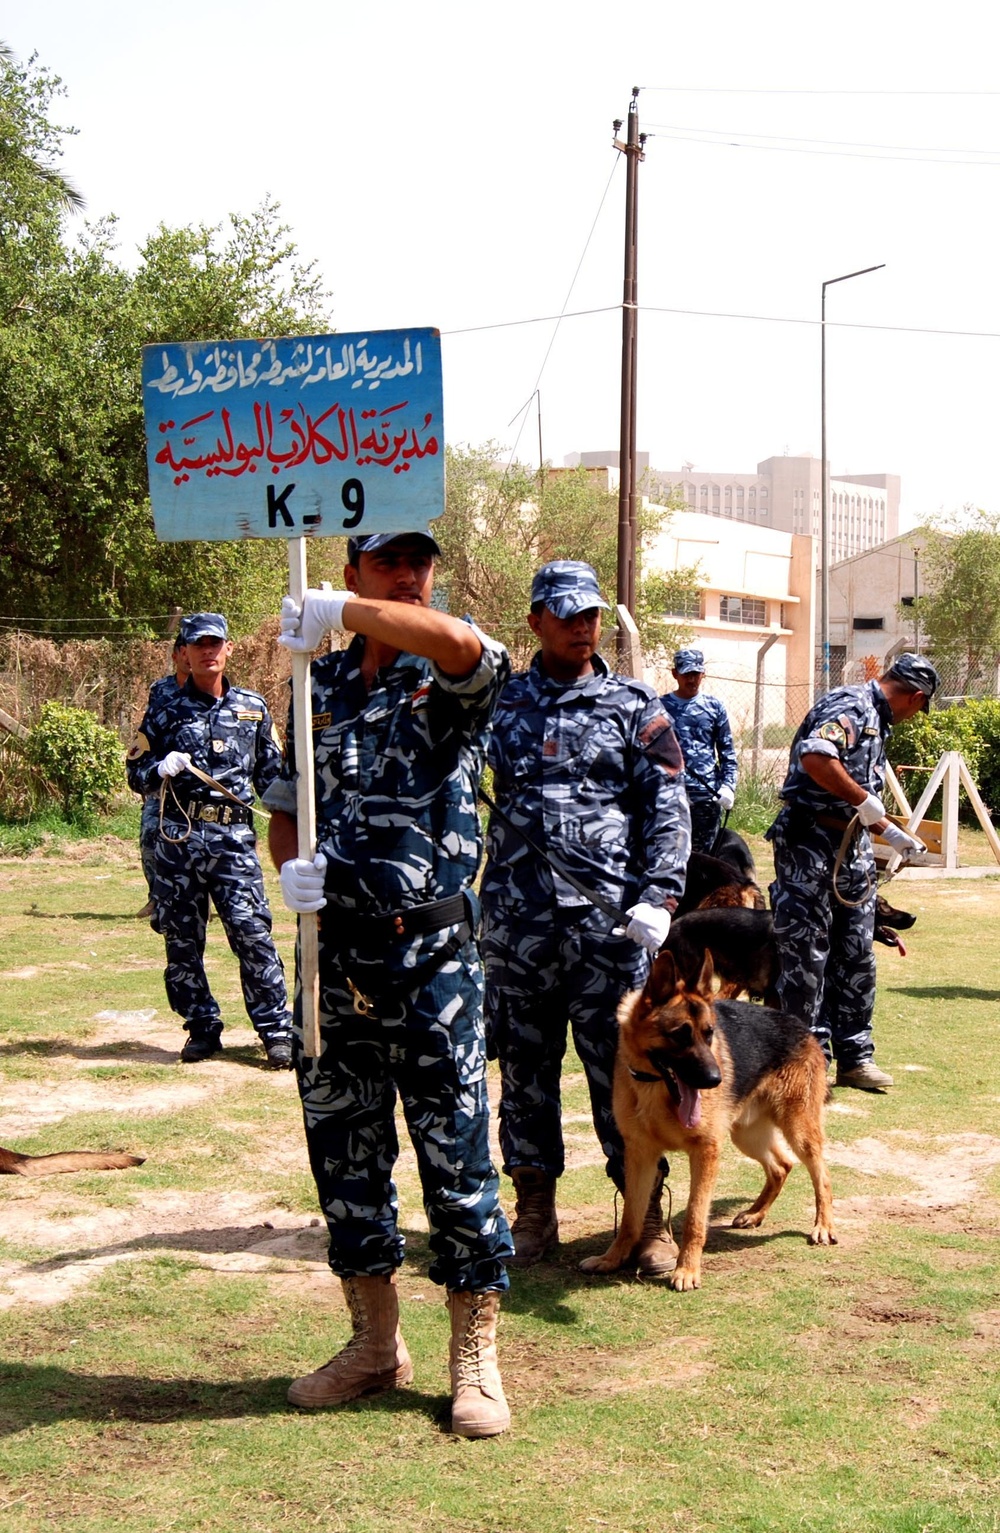 Baghdad Police College K9 handler graduation